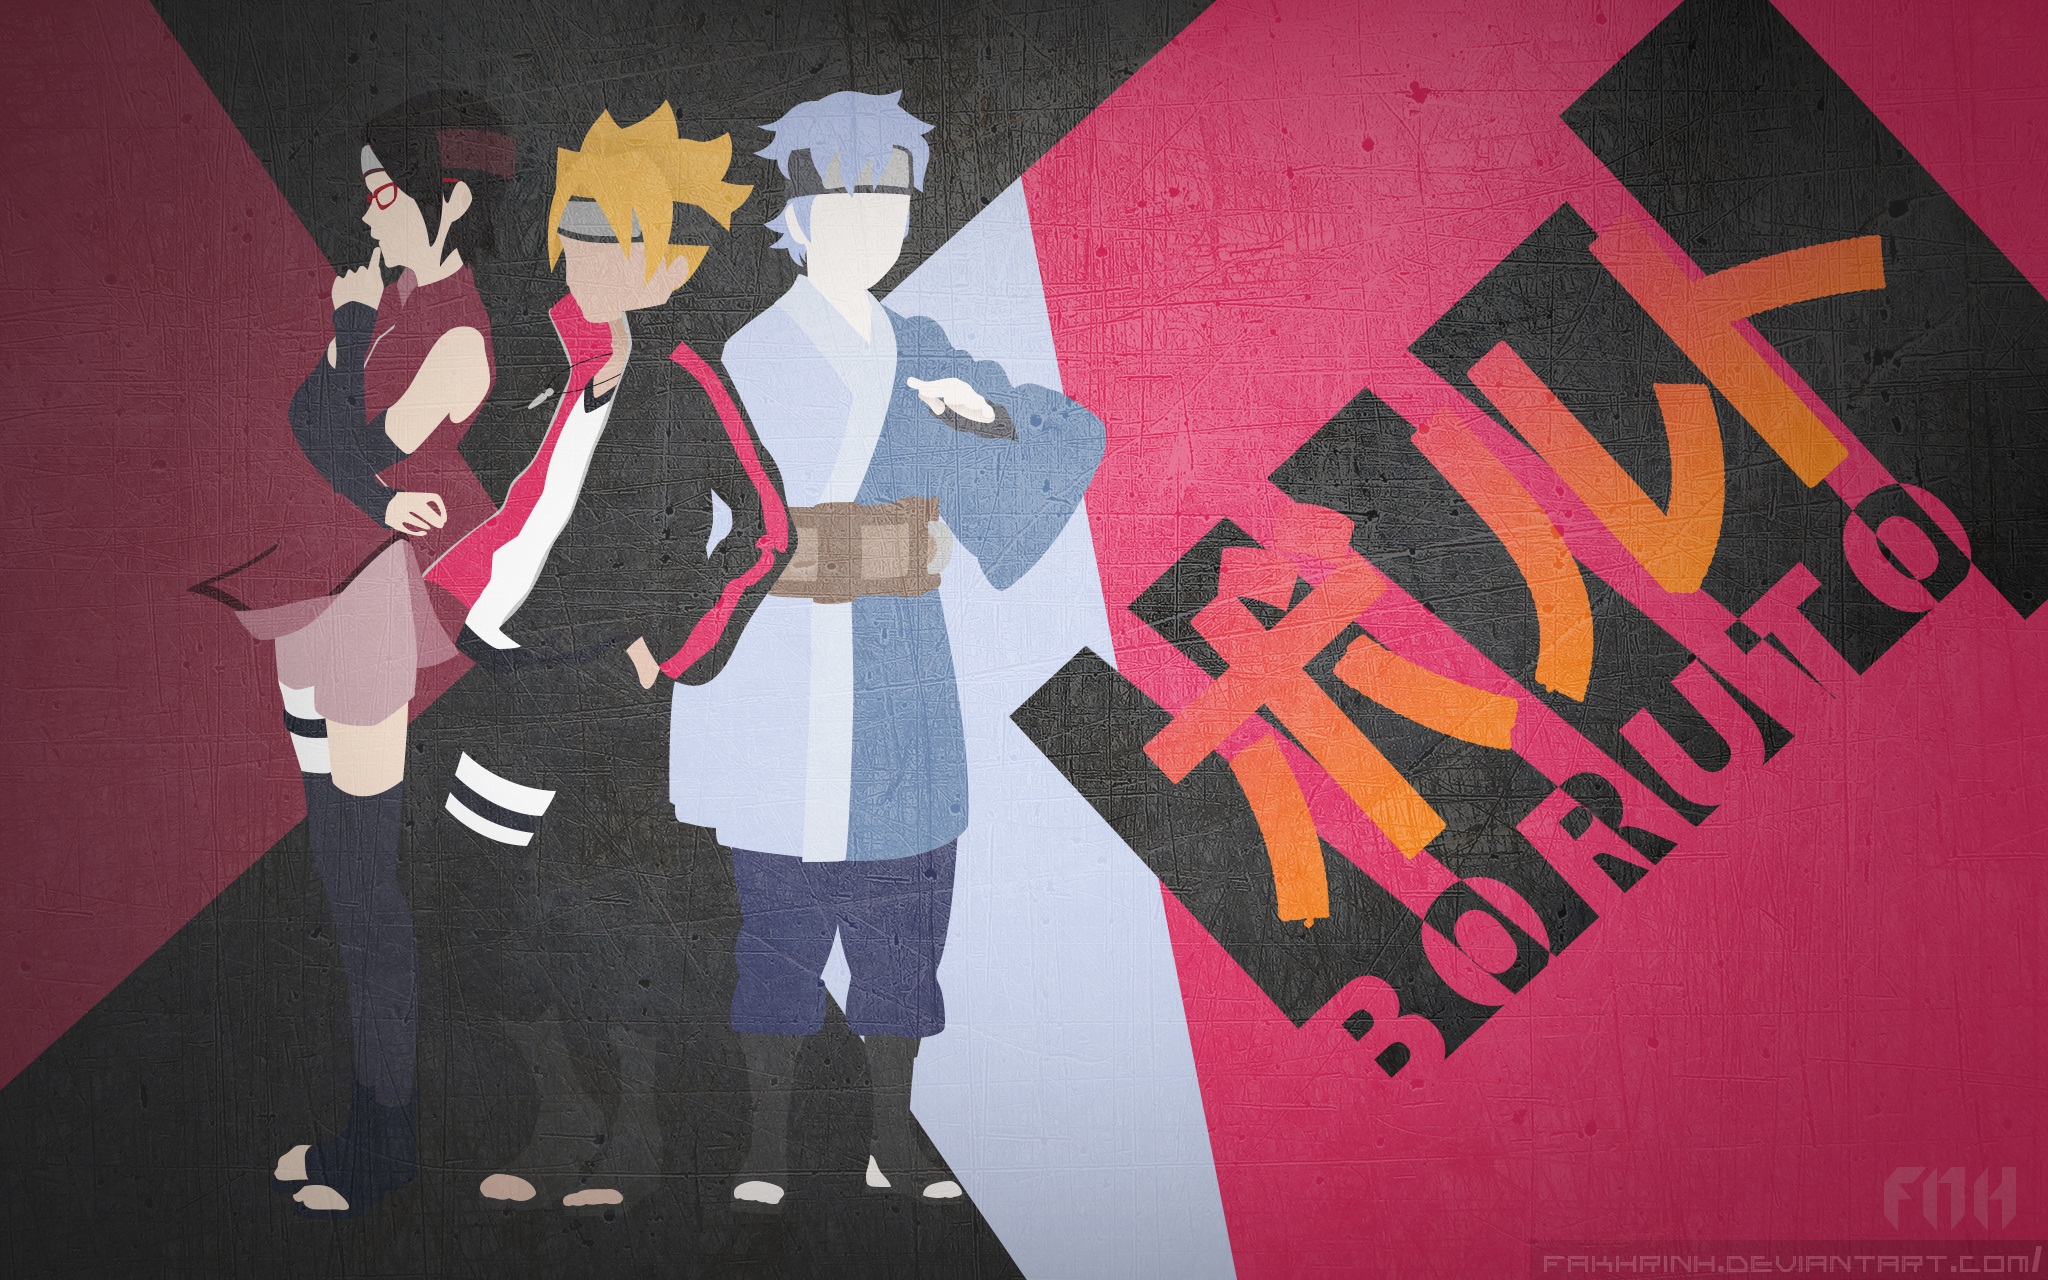 Download mobile wallpaper Anime, Naruto, Sarada Uchiha, Boruto Uzumaki, Mitsuki (Naruto), Boruto for free.